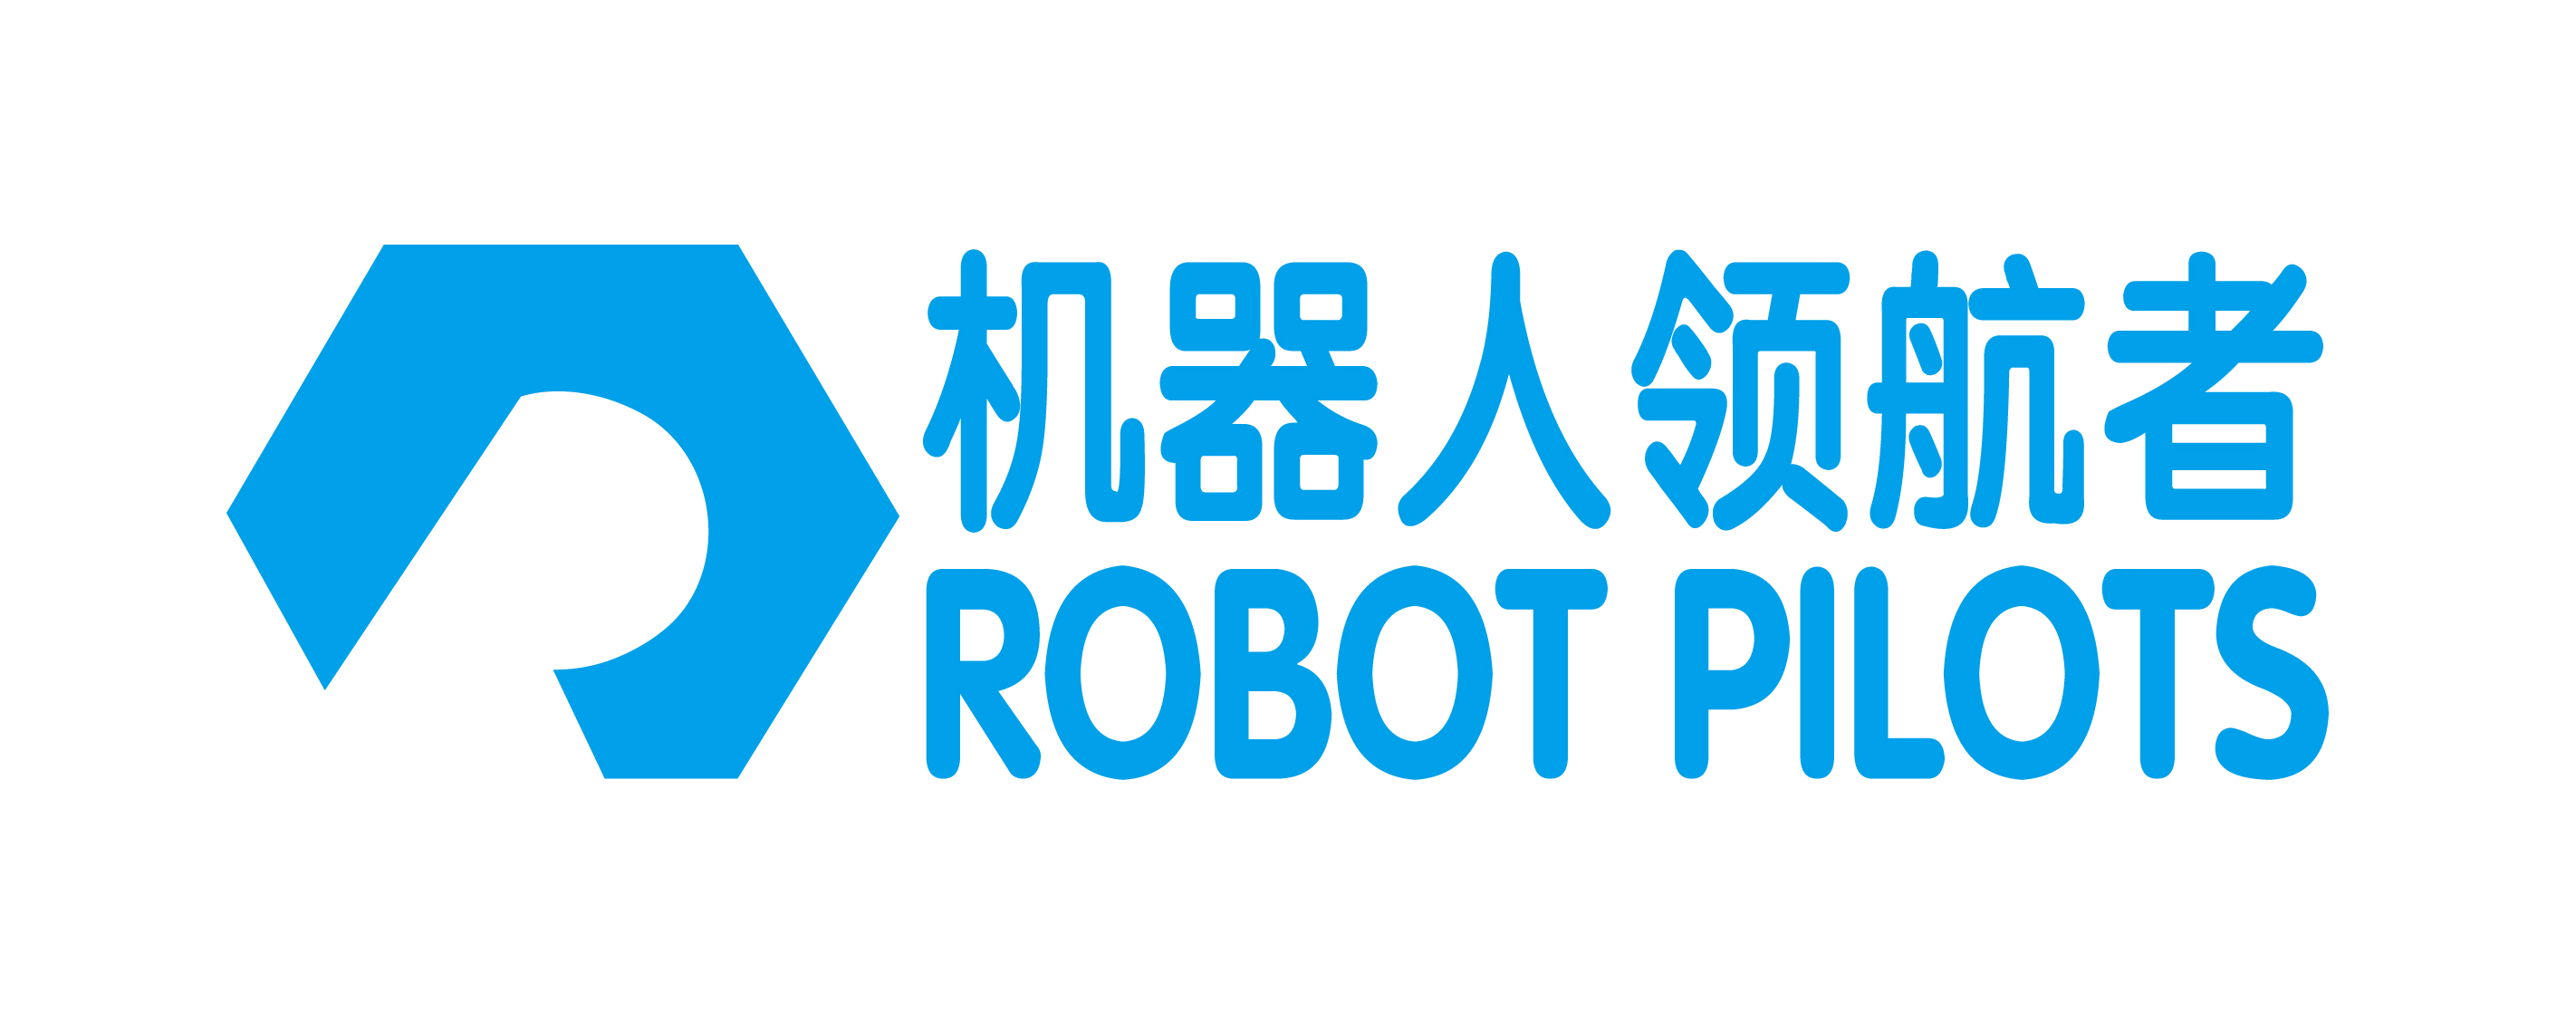 深圳大学-Robot Pilots-01.jpg